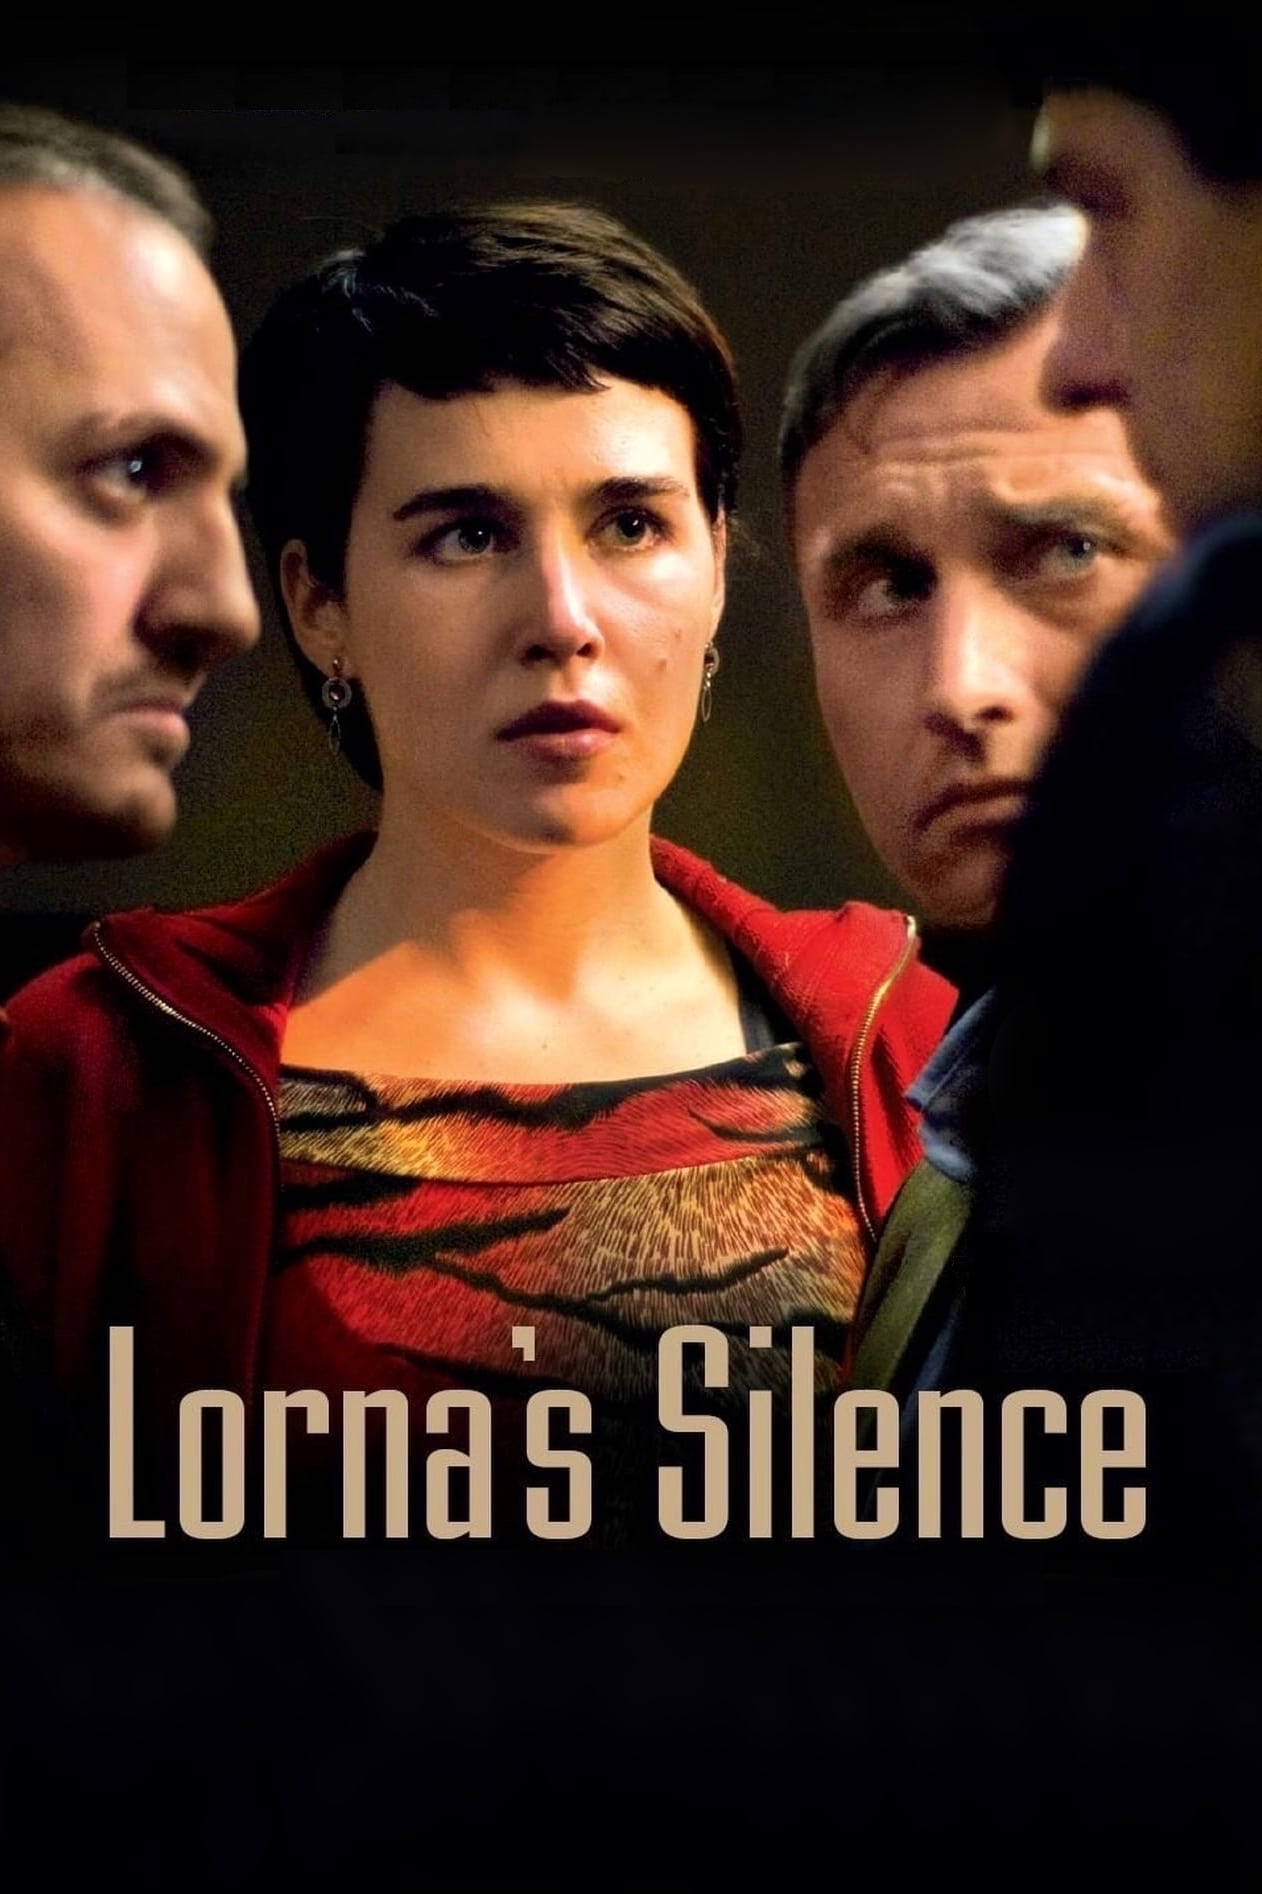 Lorna's Silence (2008)